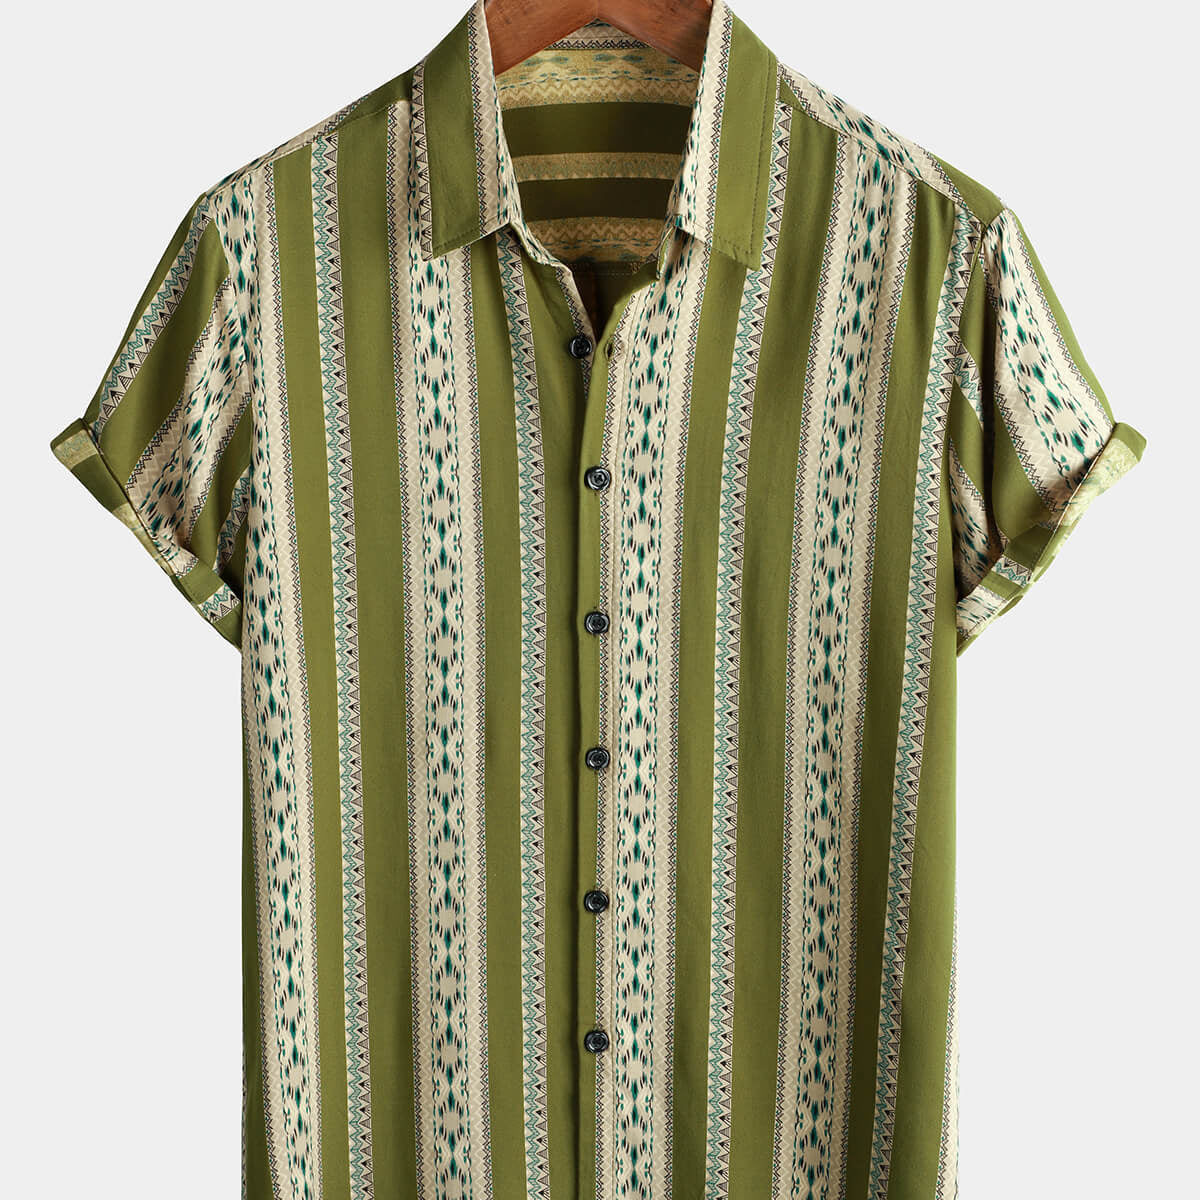 Camisa retro con botones occidentales y estampado azteca de manga corta vintage de rayas verdes para hombre